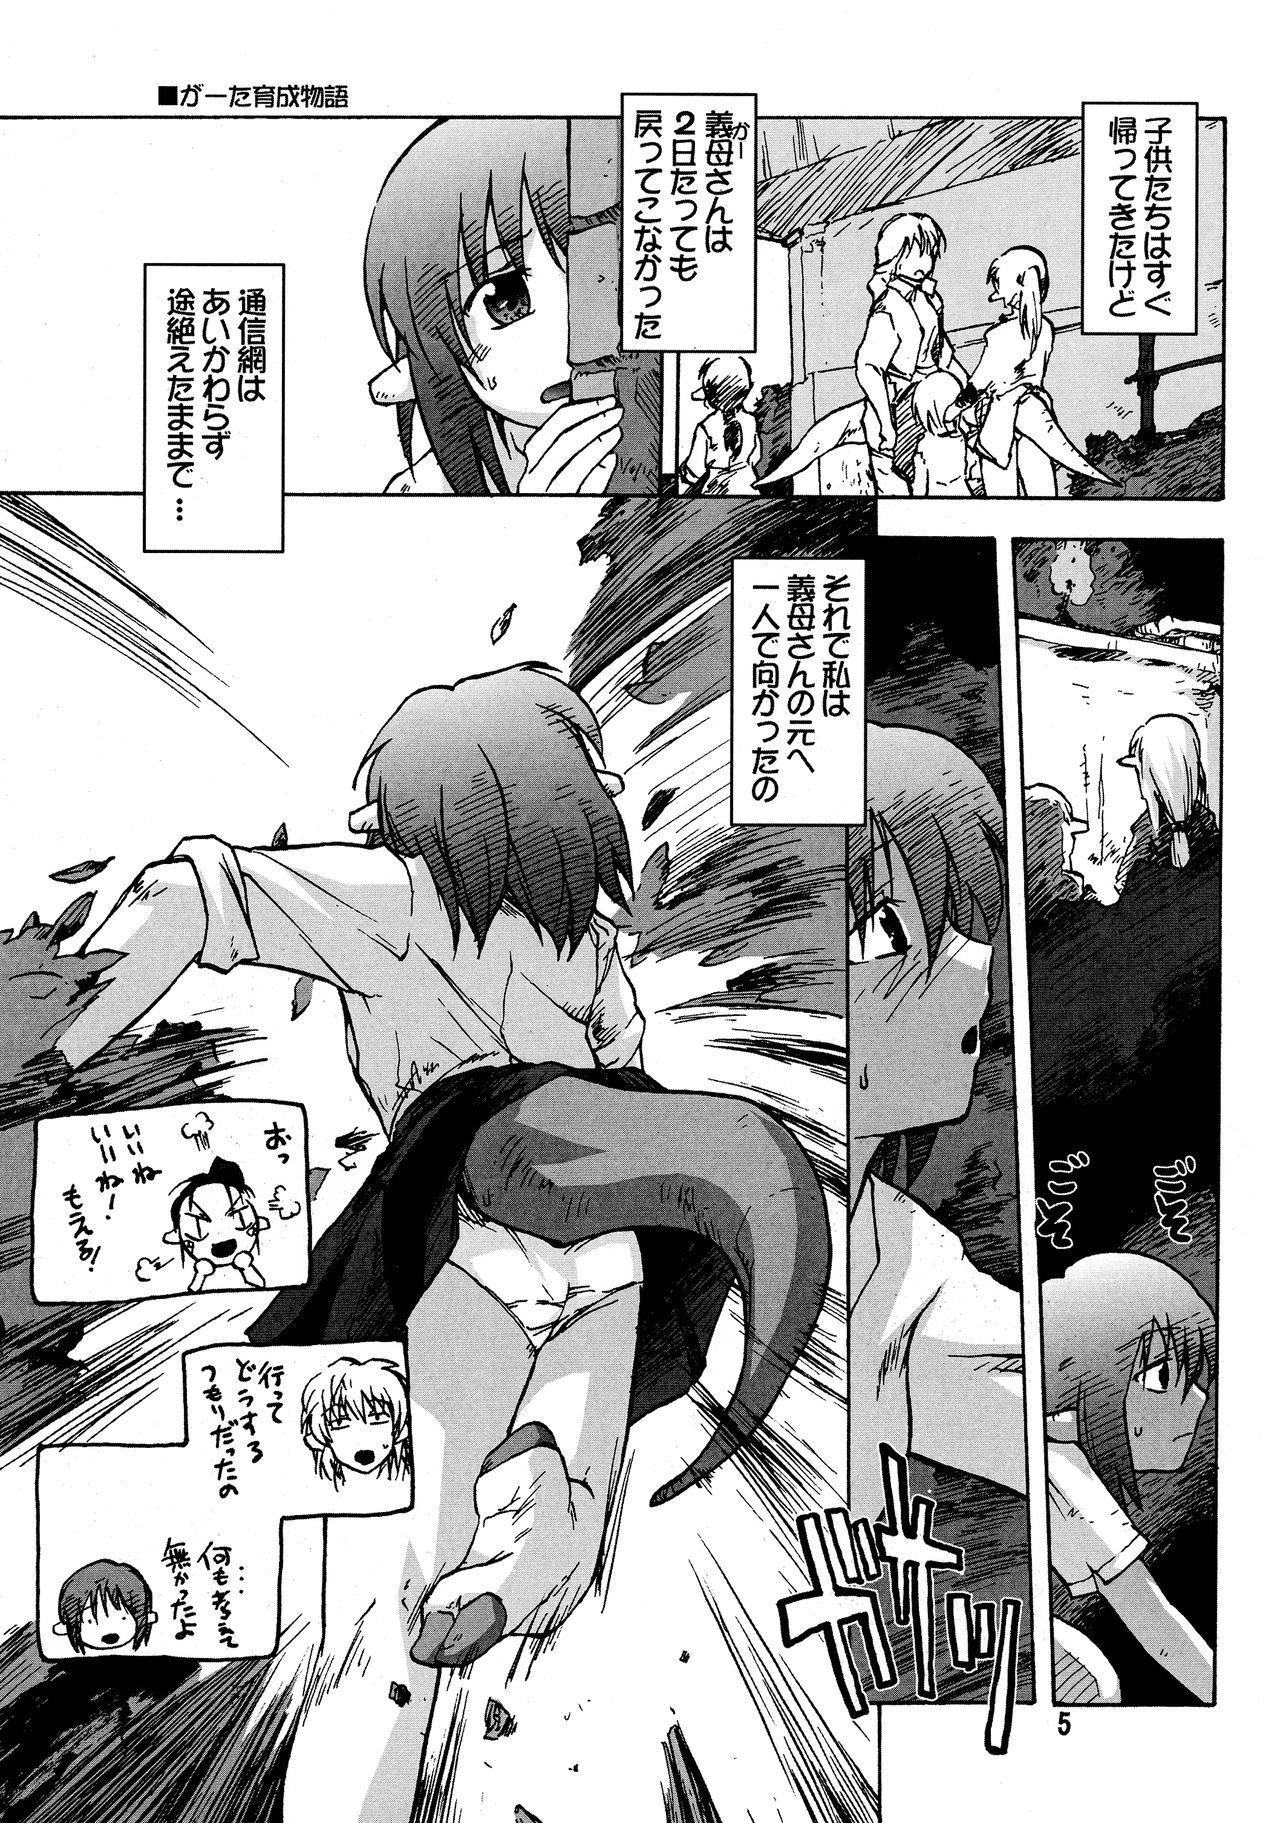 Culote Manga Mintochikuwa vol. 3 Inked - Page 5